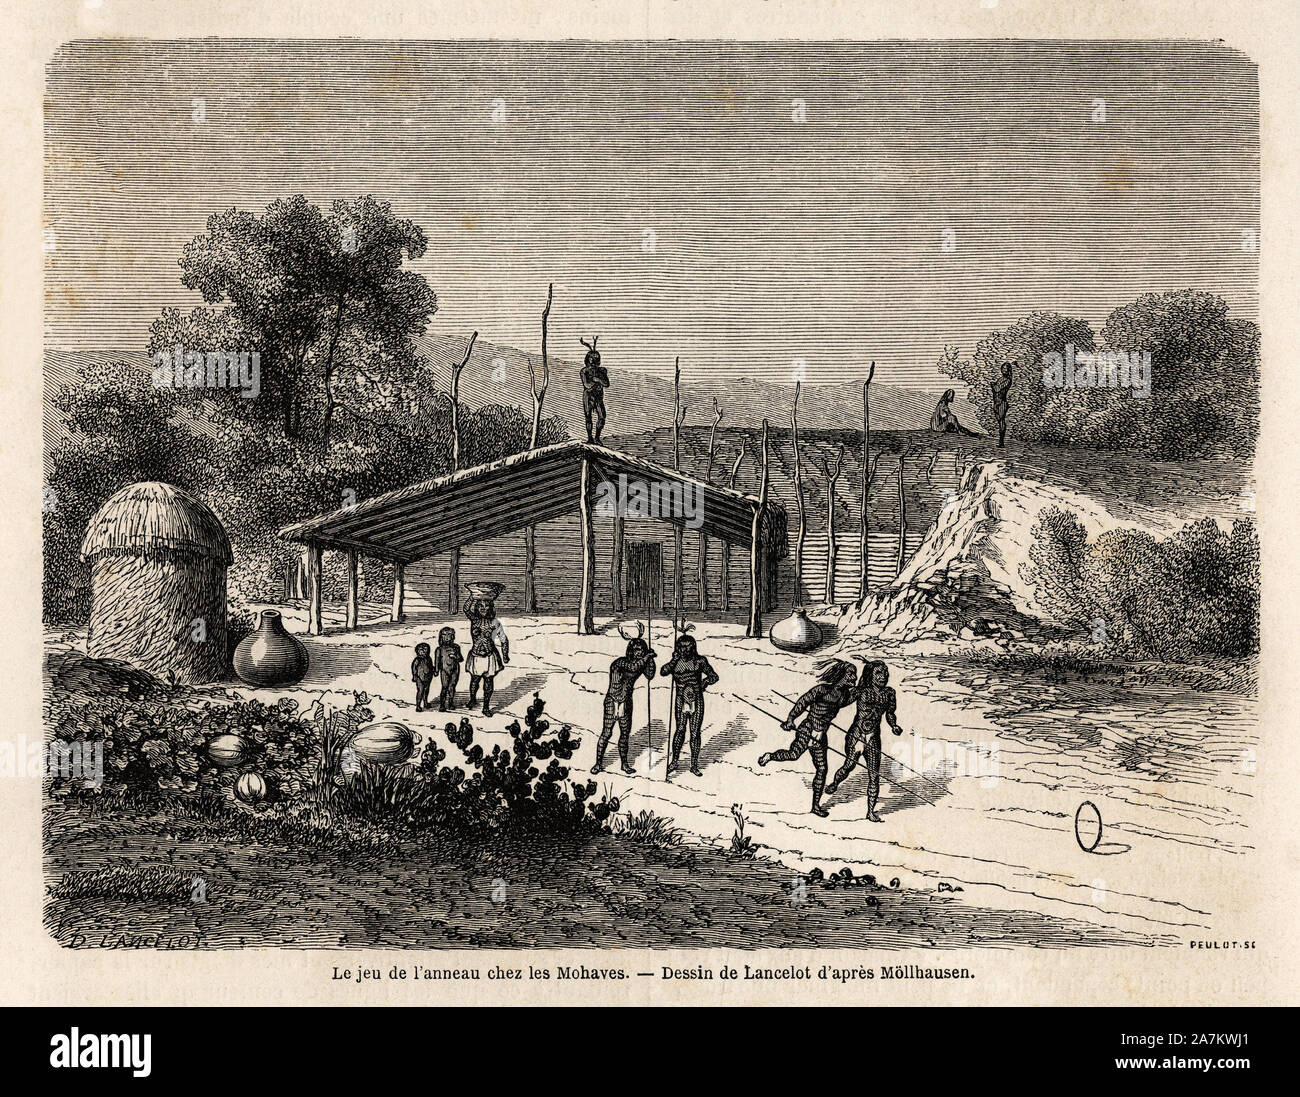 Le jeu de l'anneau chez les Indiens Mohaves, dessin de Lancelot, pour illustrer le voyage du Mississipi aux cotes de l'Ocean Pacifique, en 1853-1854, Foto Stock